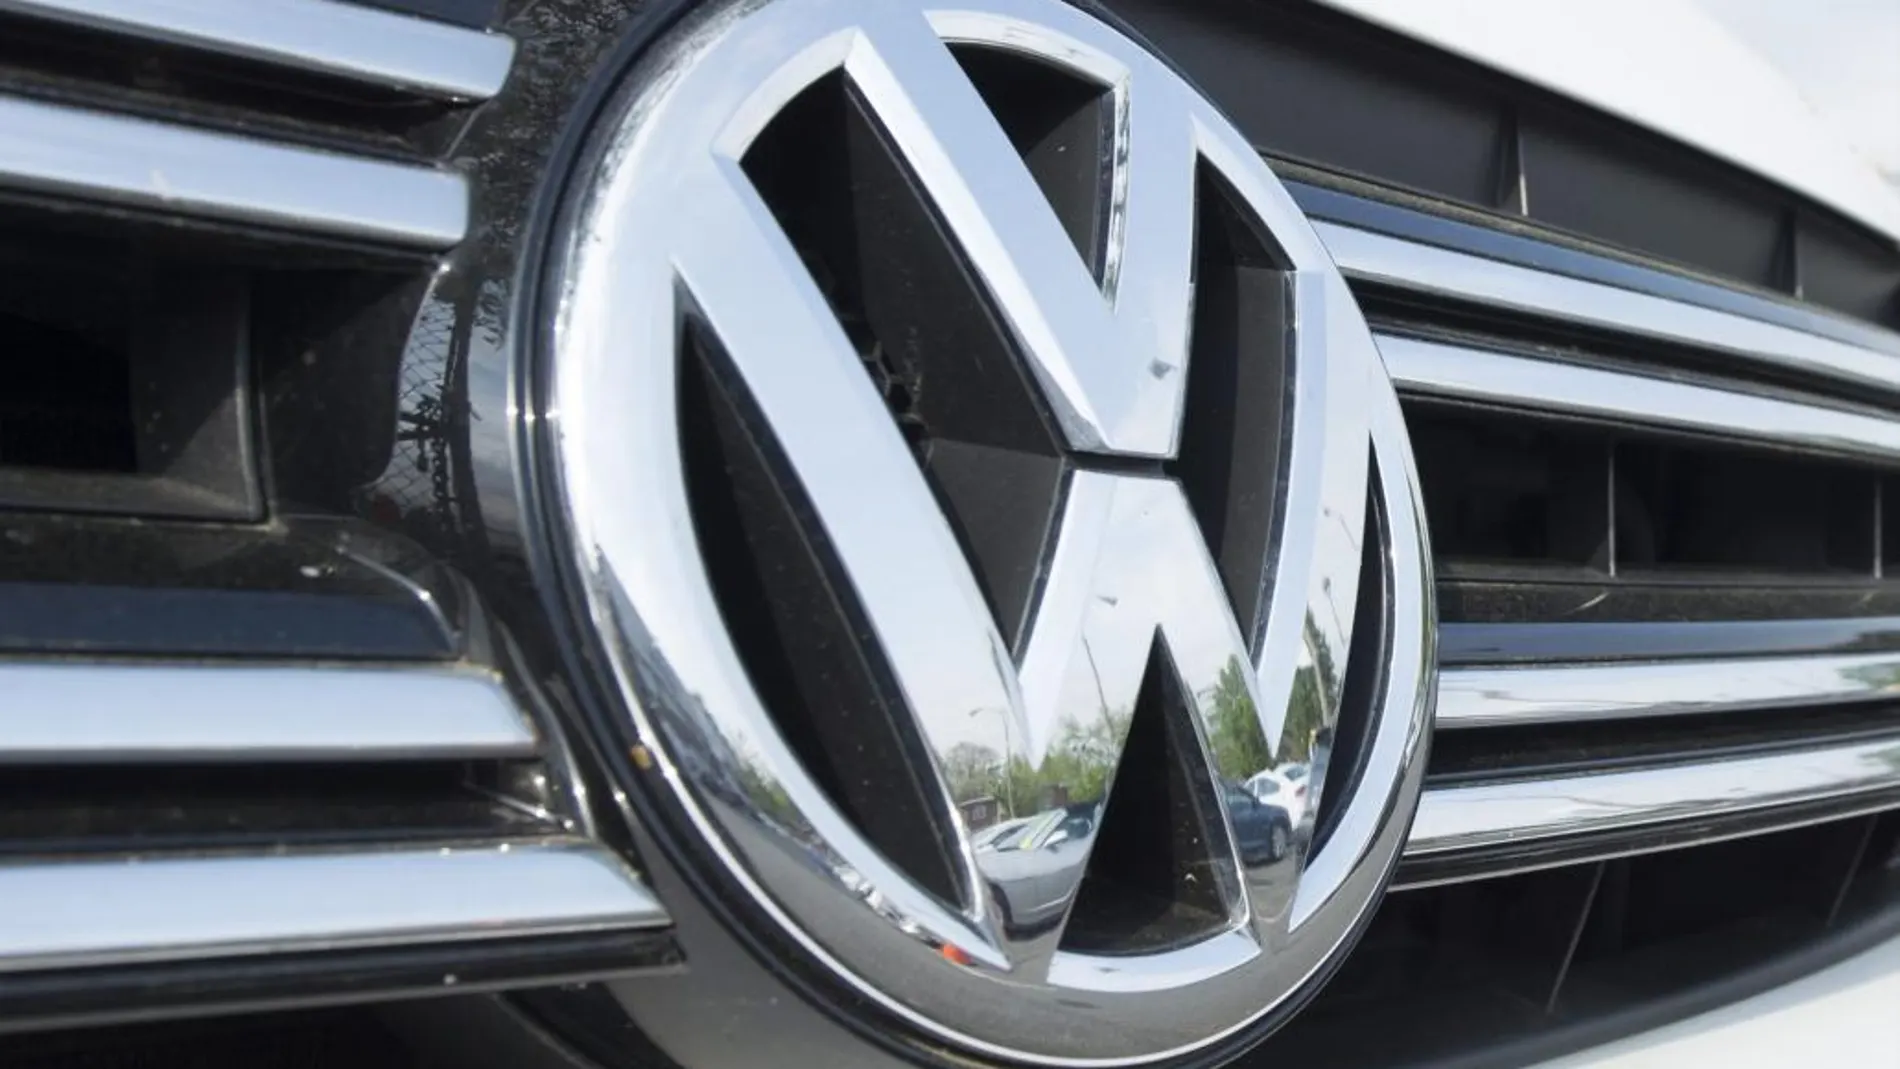 Fotografía de archivo que muestra el logotipo del fabricante de automóviles alemán Volkswagen (VW).